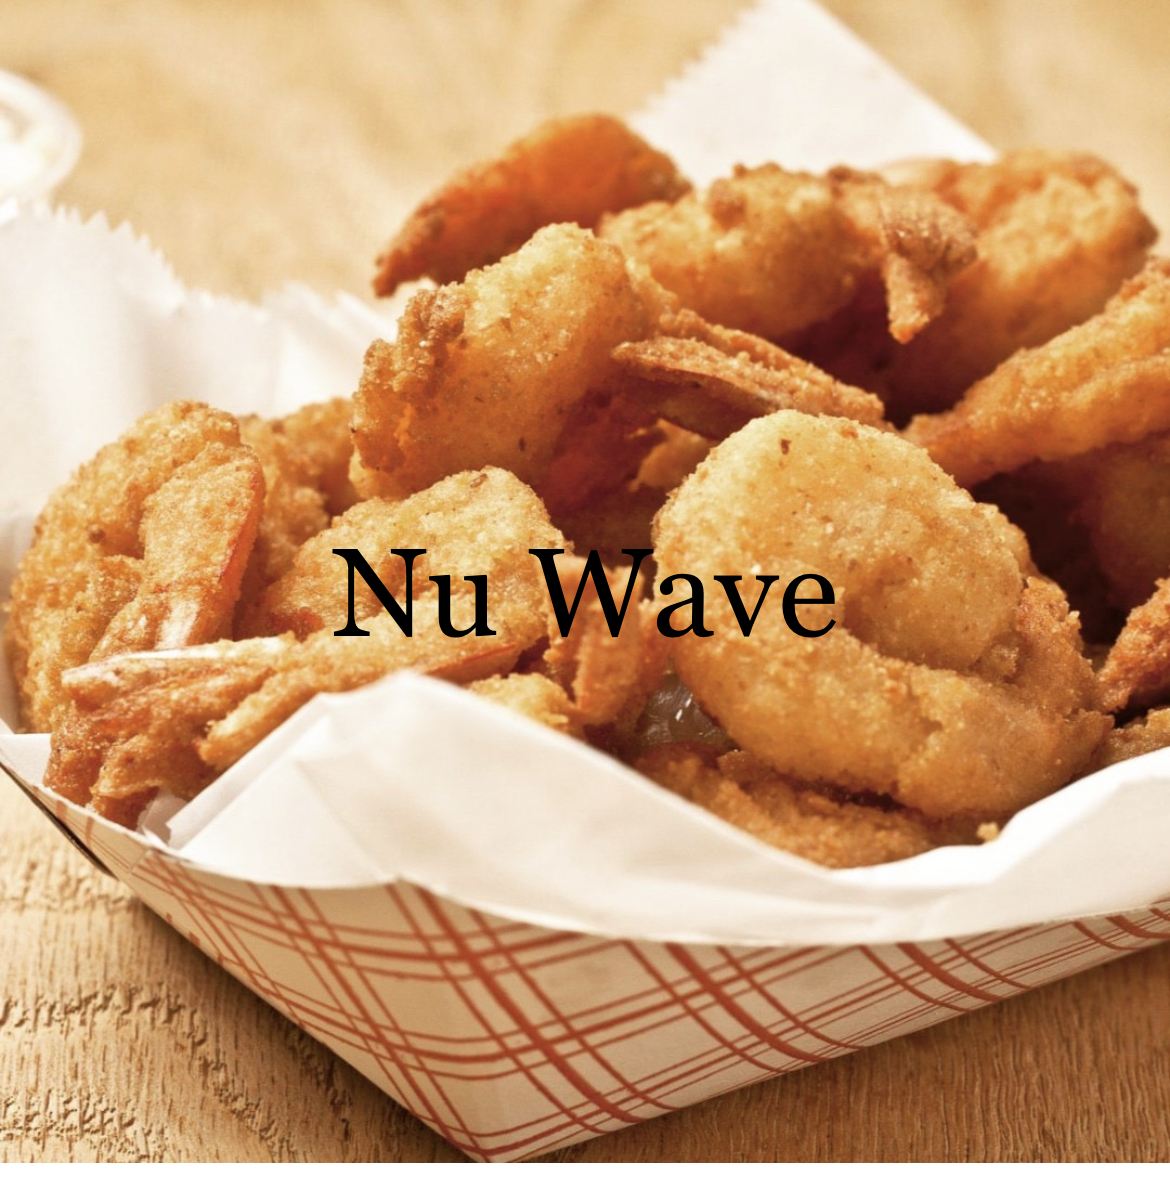 Nu Wave Fish & Chicken